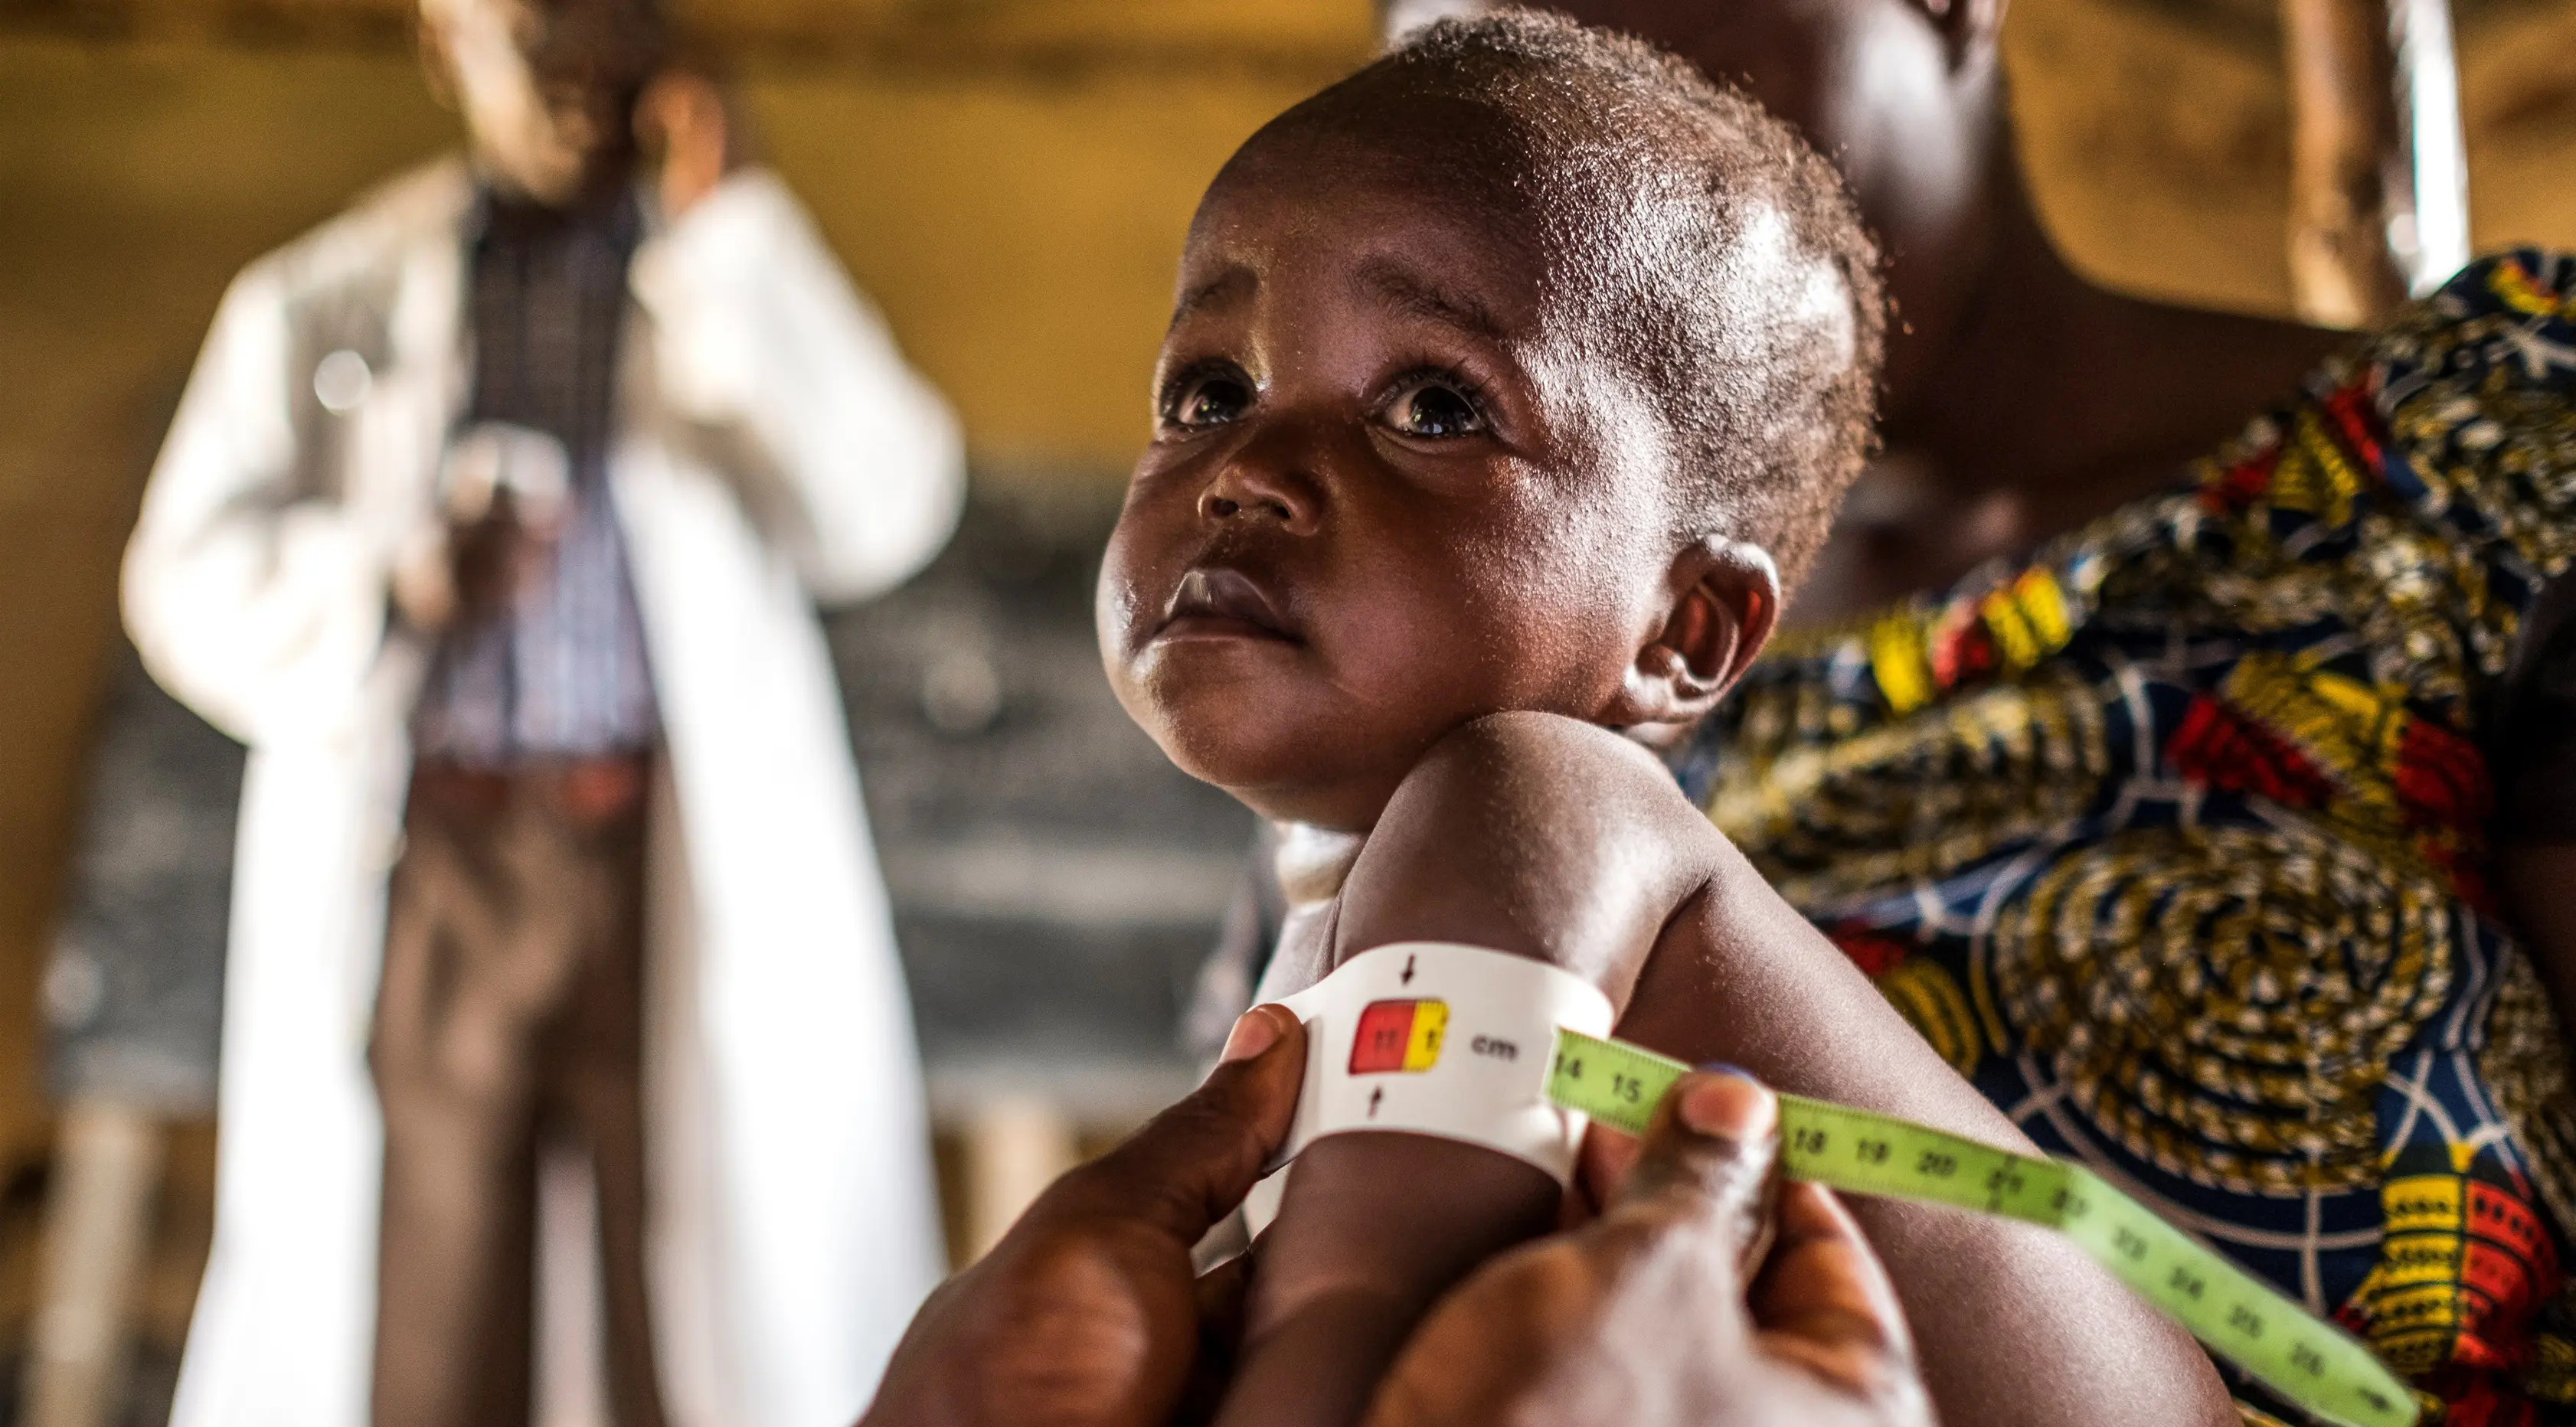 Ekspresi seorang anak saat diperiksa untuk program pencegahan kurang gizi di Pusat kesehatan di Mbau, Republik Demokratik Kongo (15/11). Di negara ini banyak penduduknya menderita kekurangan gizi. (AFP/ Eduardo Soteras)